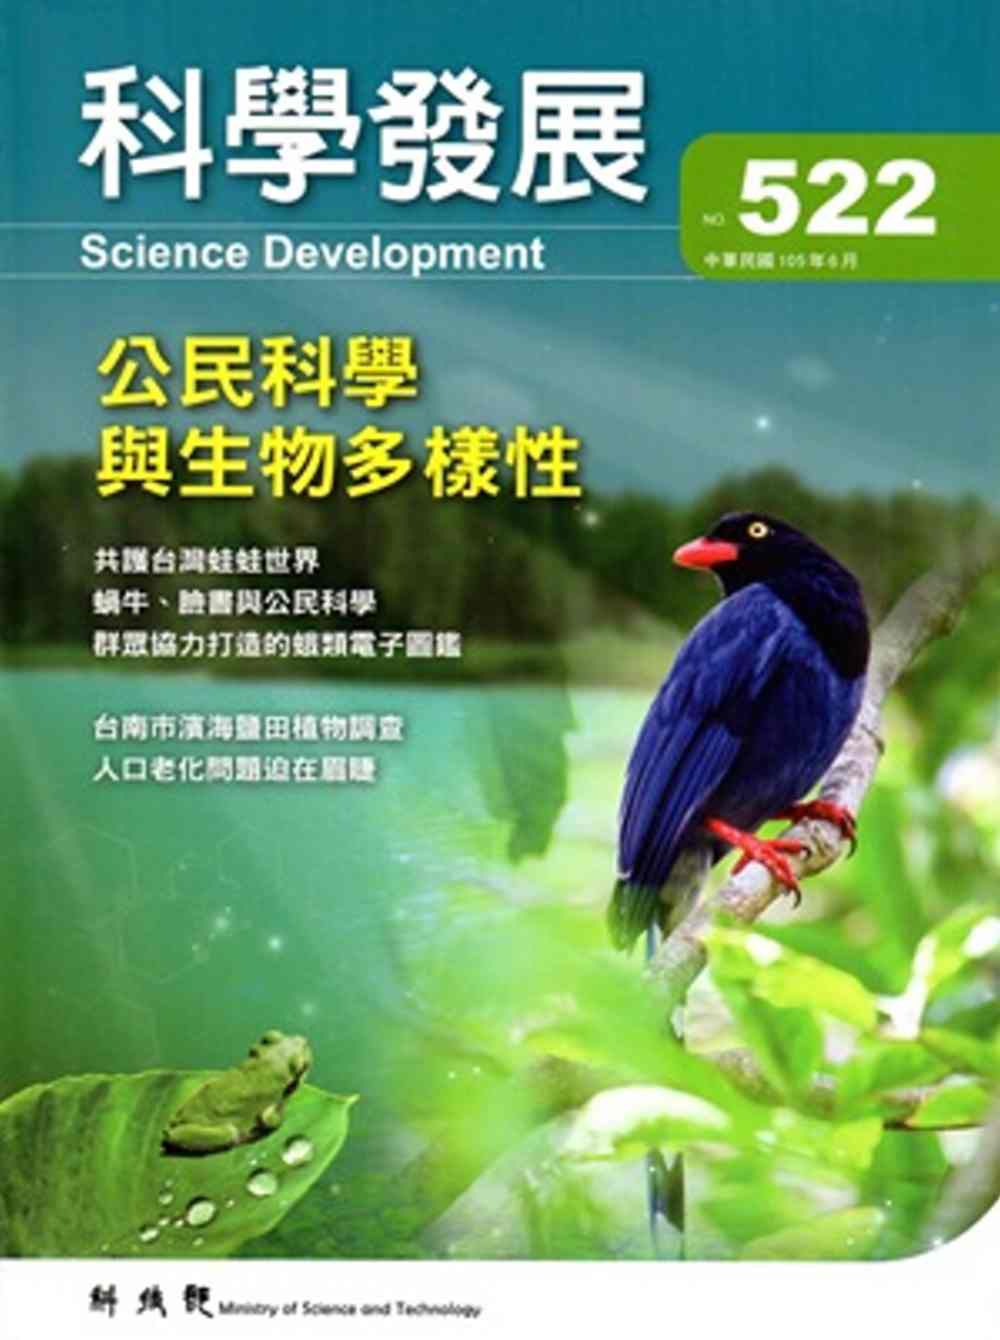 科學發展月刊第522期(105/06)